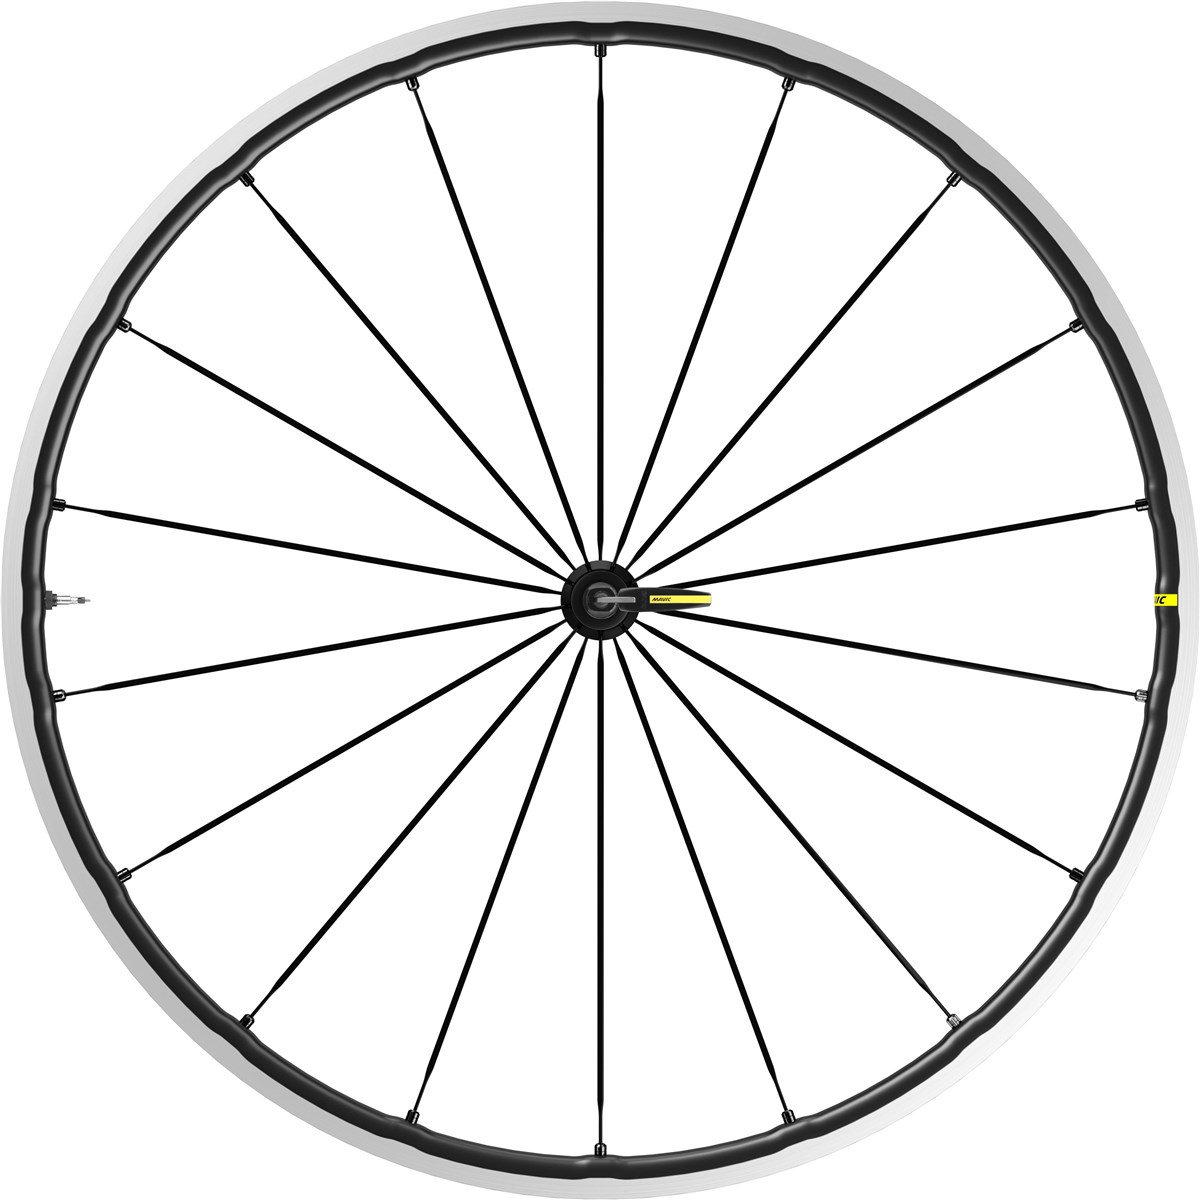 Mavic Ksyrium SL 700c Front Wheel product image